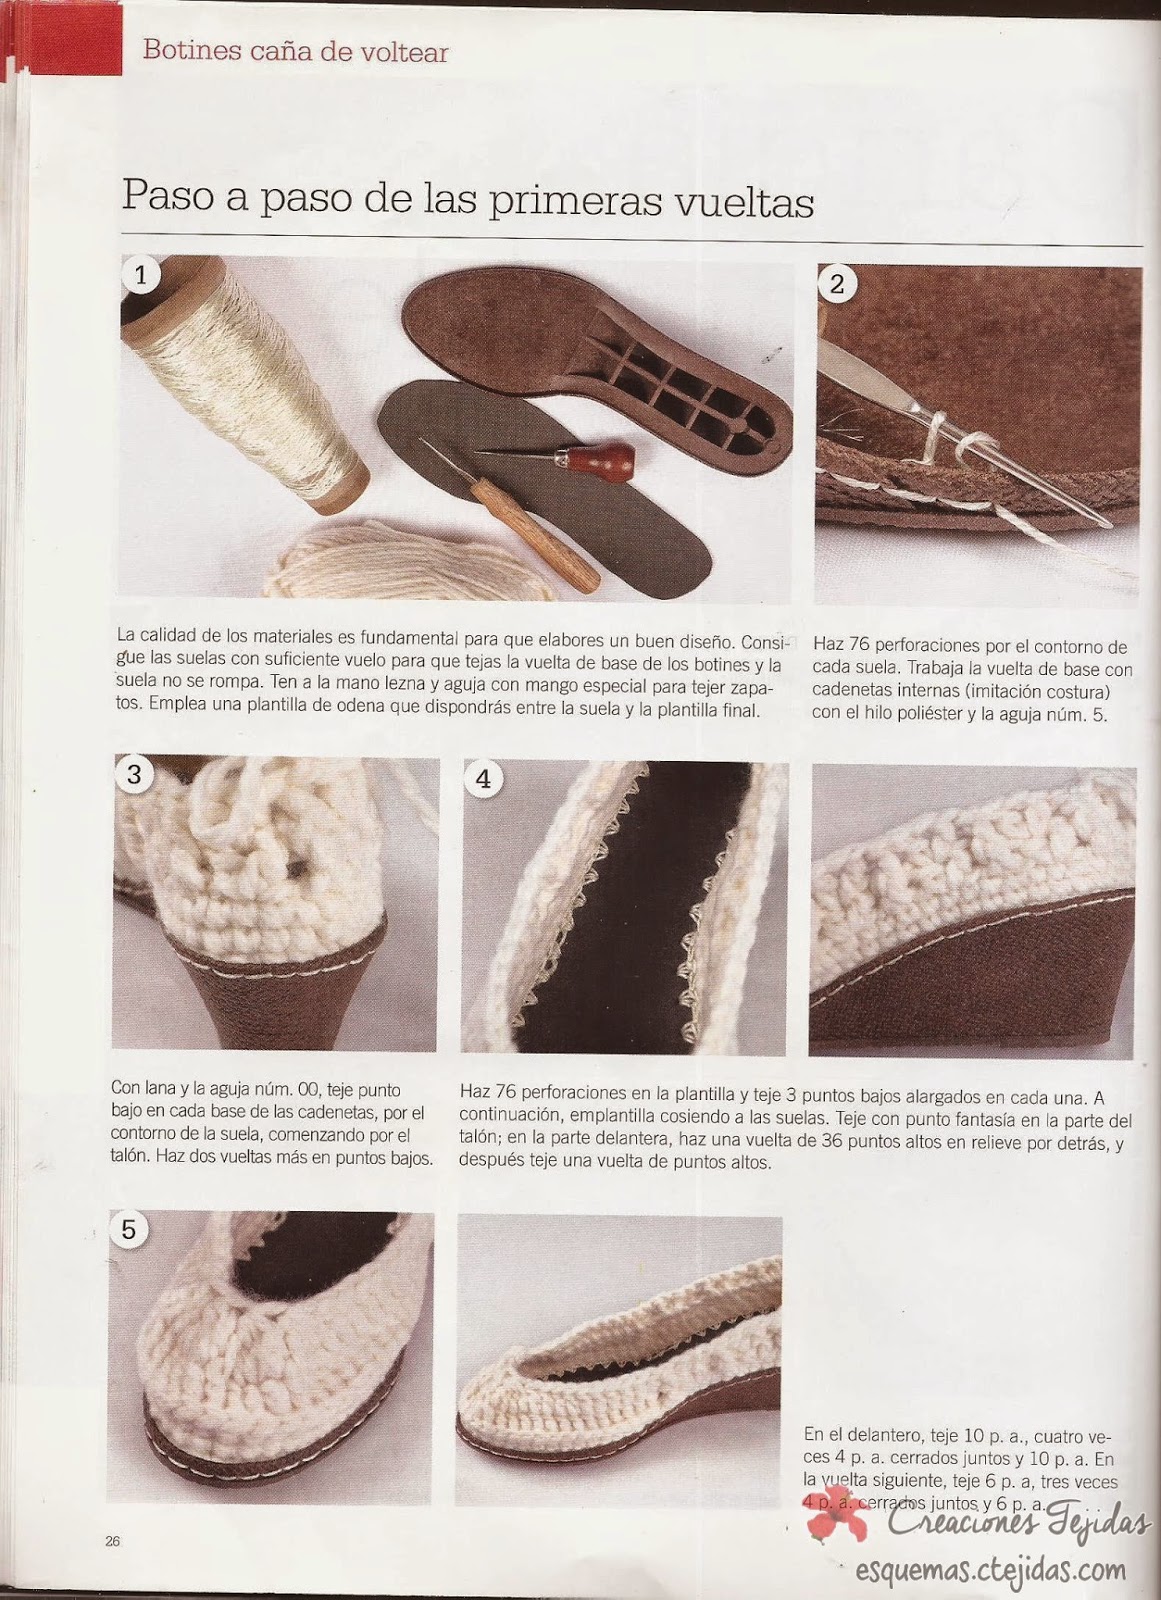 Zapatos a Crochet - Botines Cana de Voltear